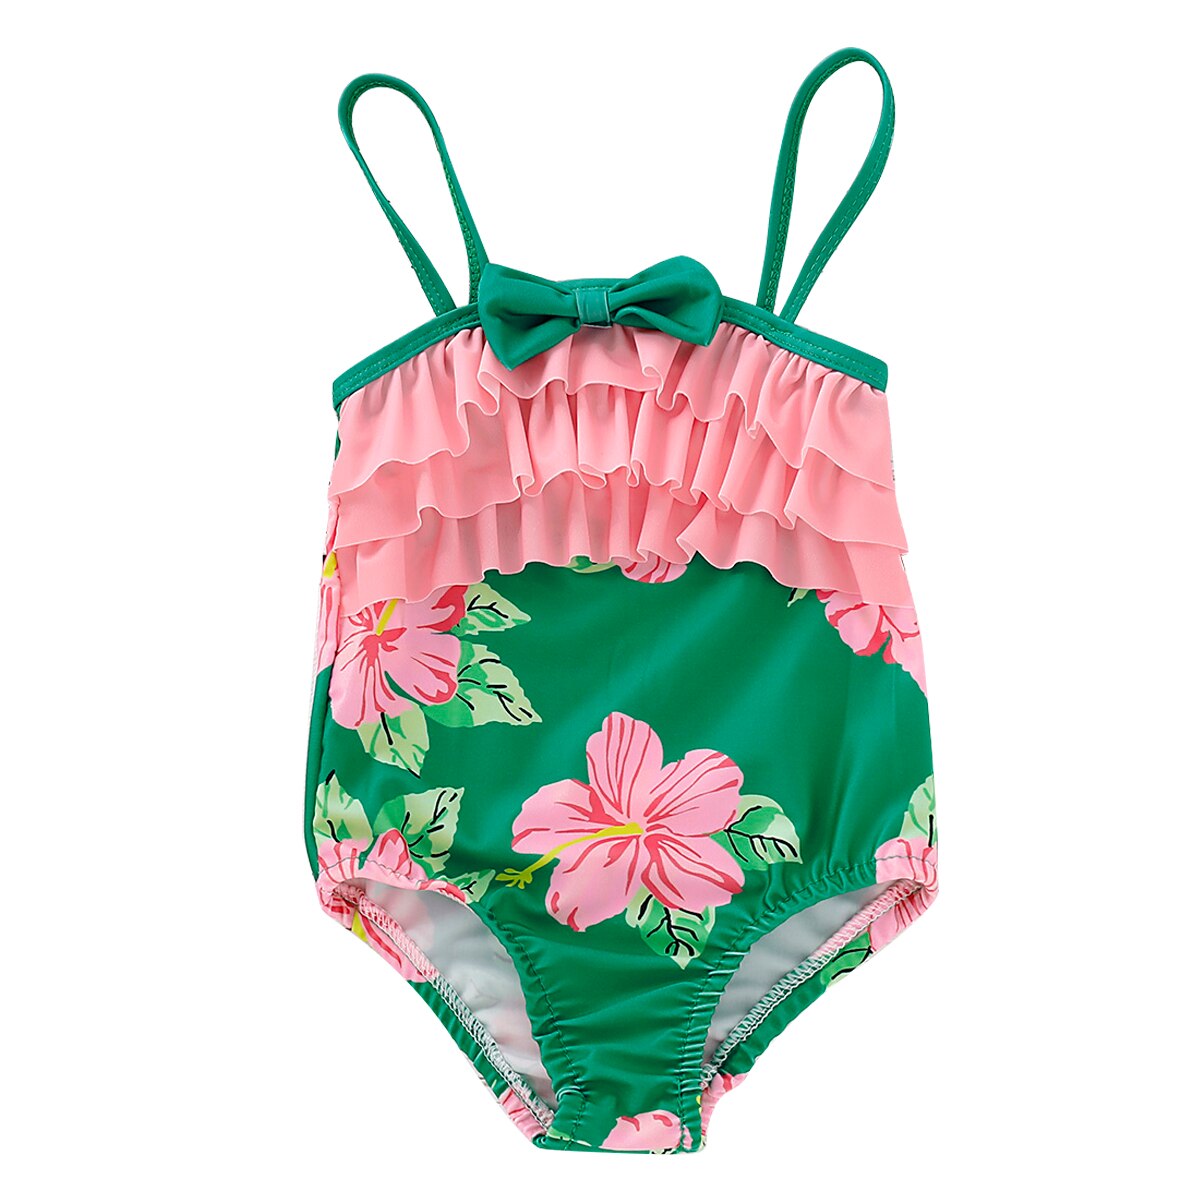 Baby pige badedragt børn toddler pige badetøj flæser blomster et stykke strand badedragt monokini strandtøj